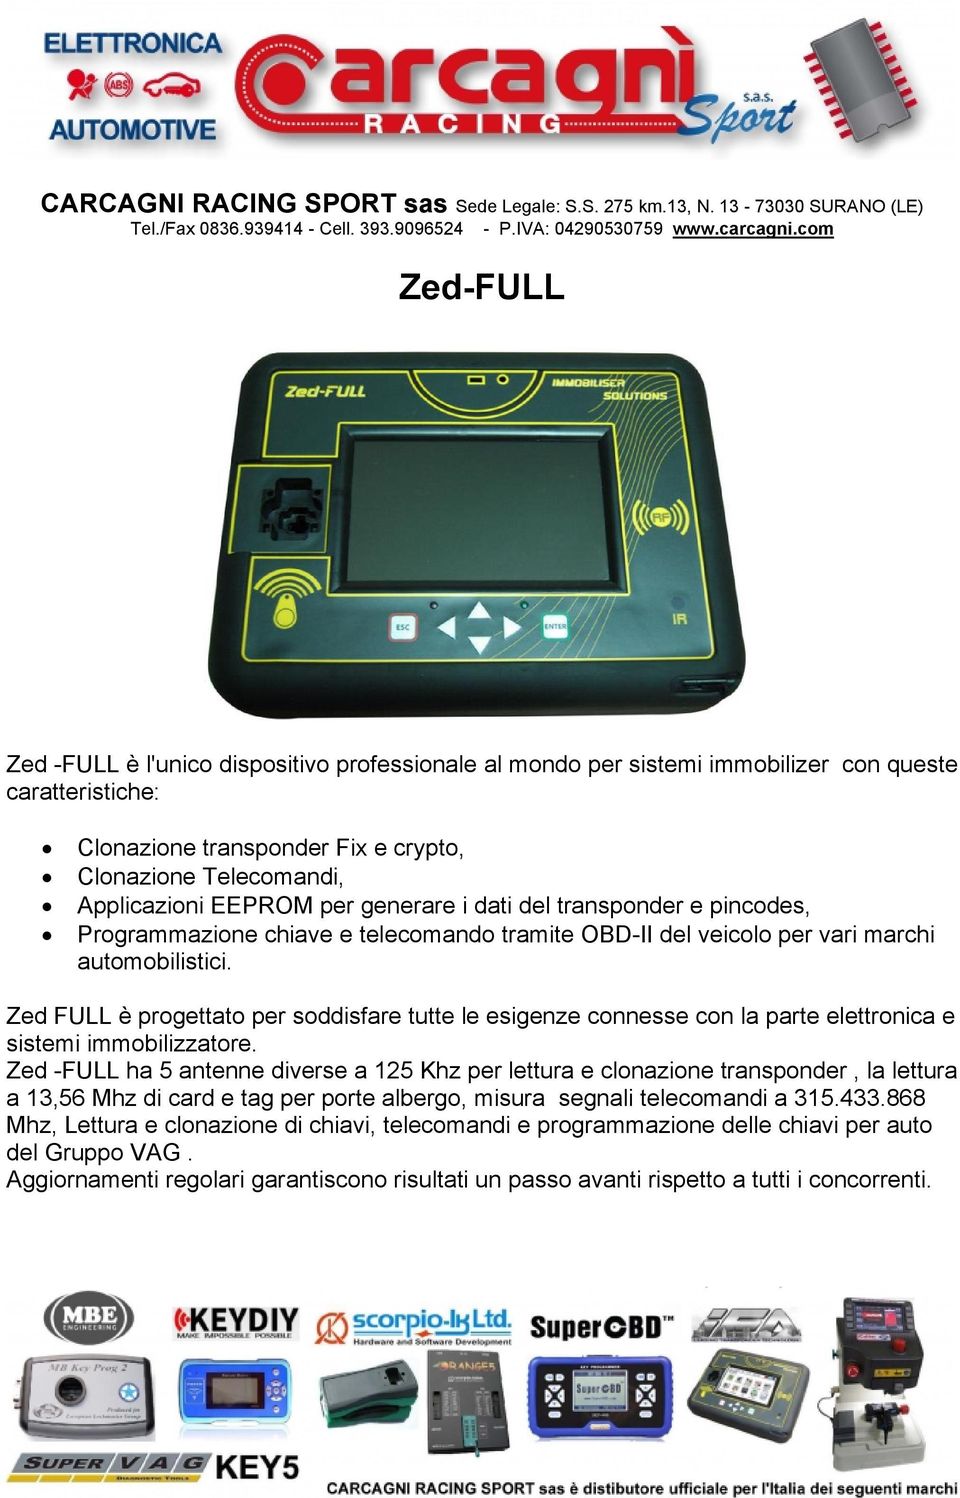 Zed FULL è progettato per soddisfare tutte le esigenze connesse con la parte elettronica e sistemi immobilizzatore.